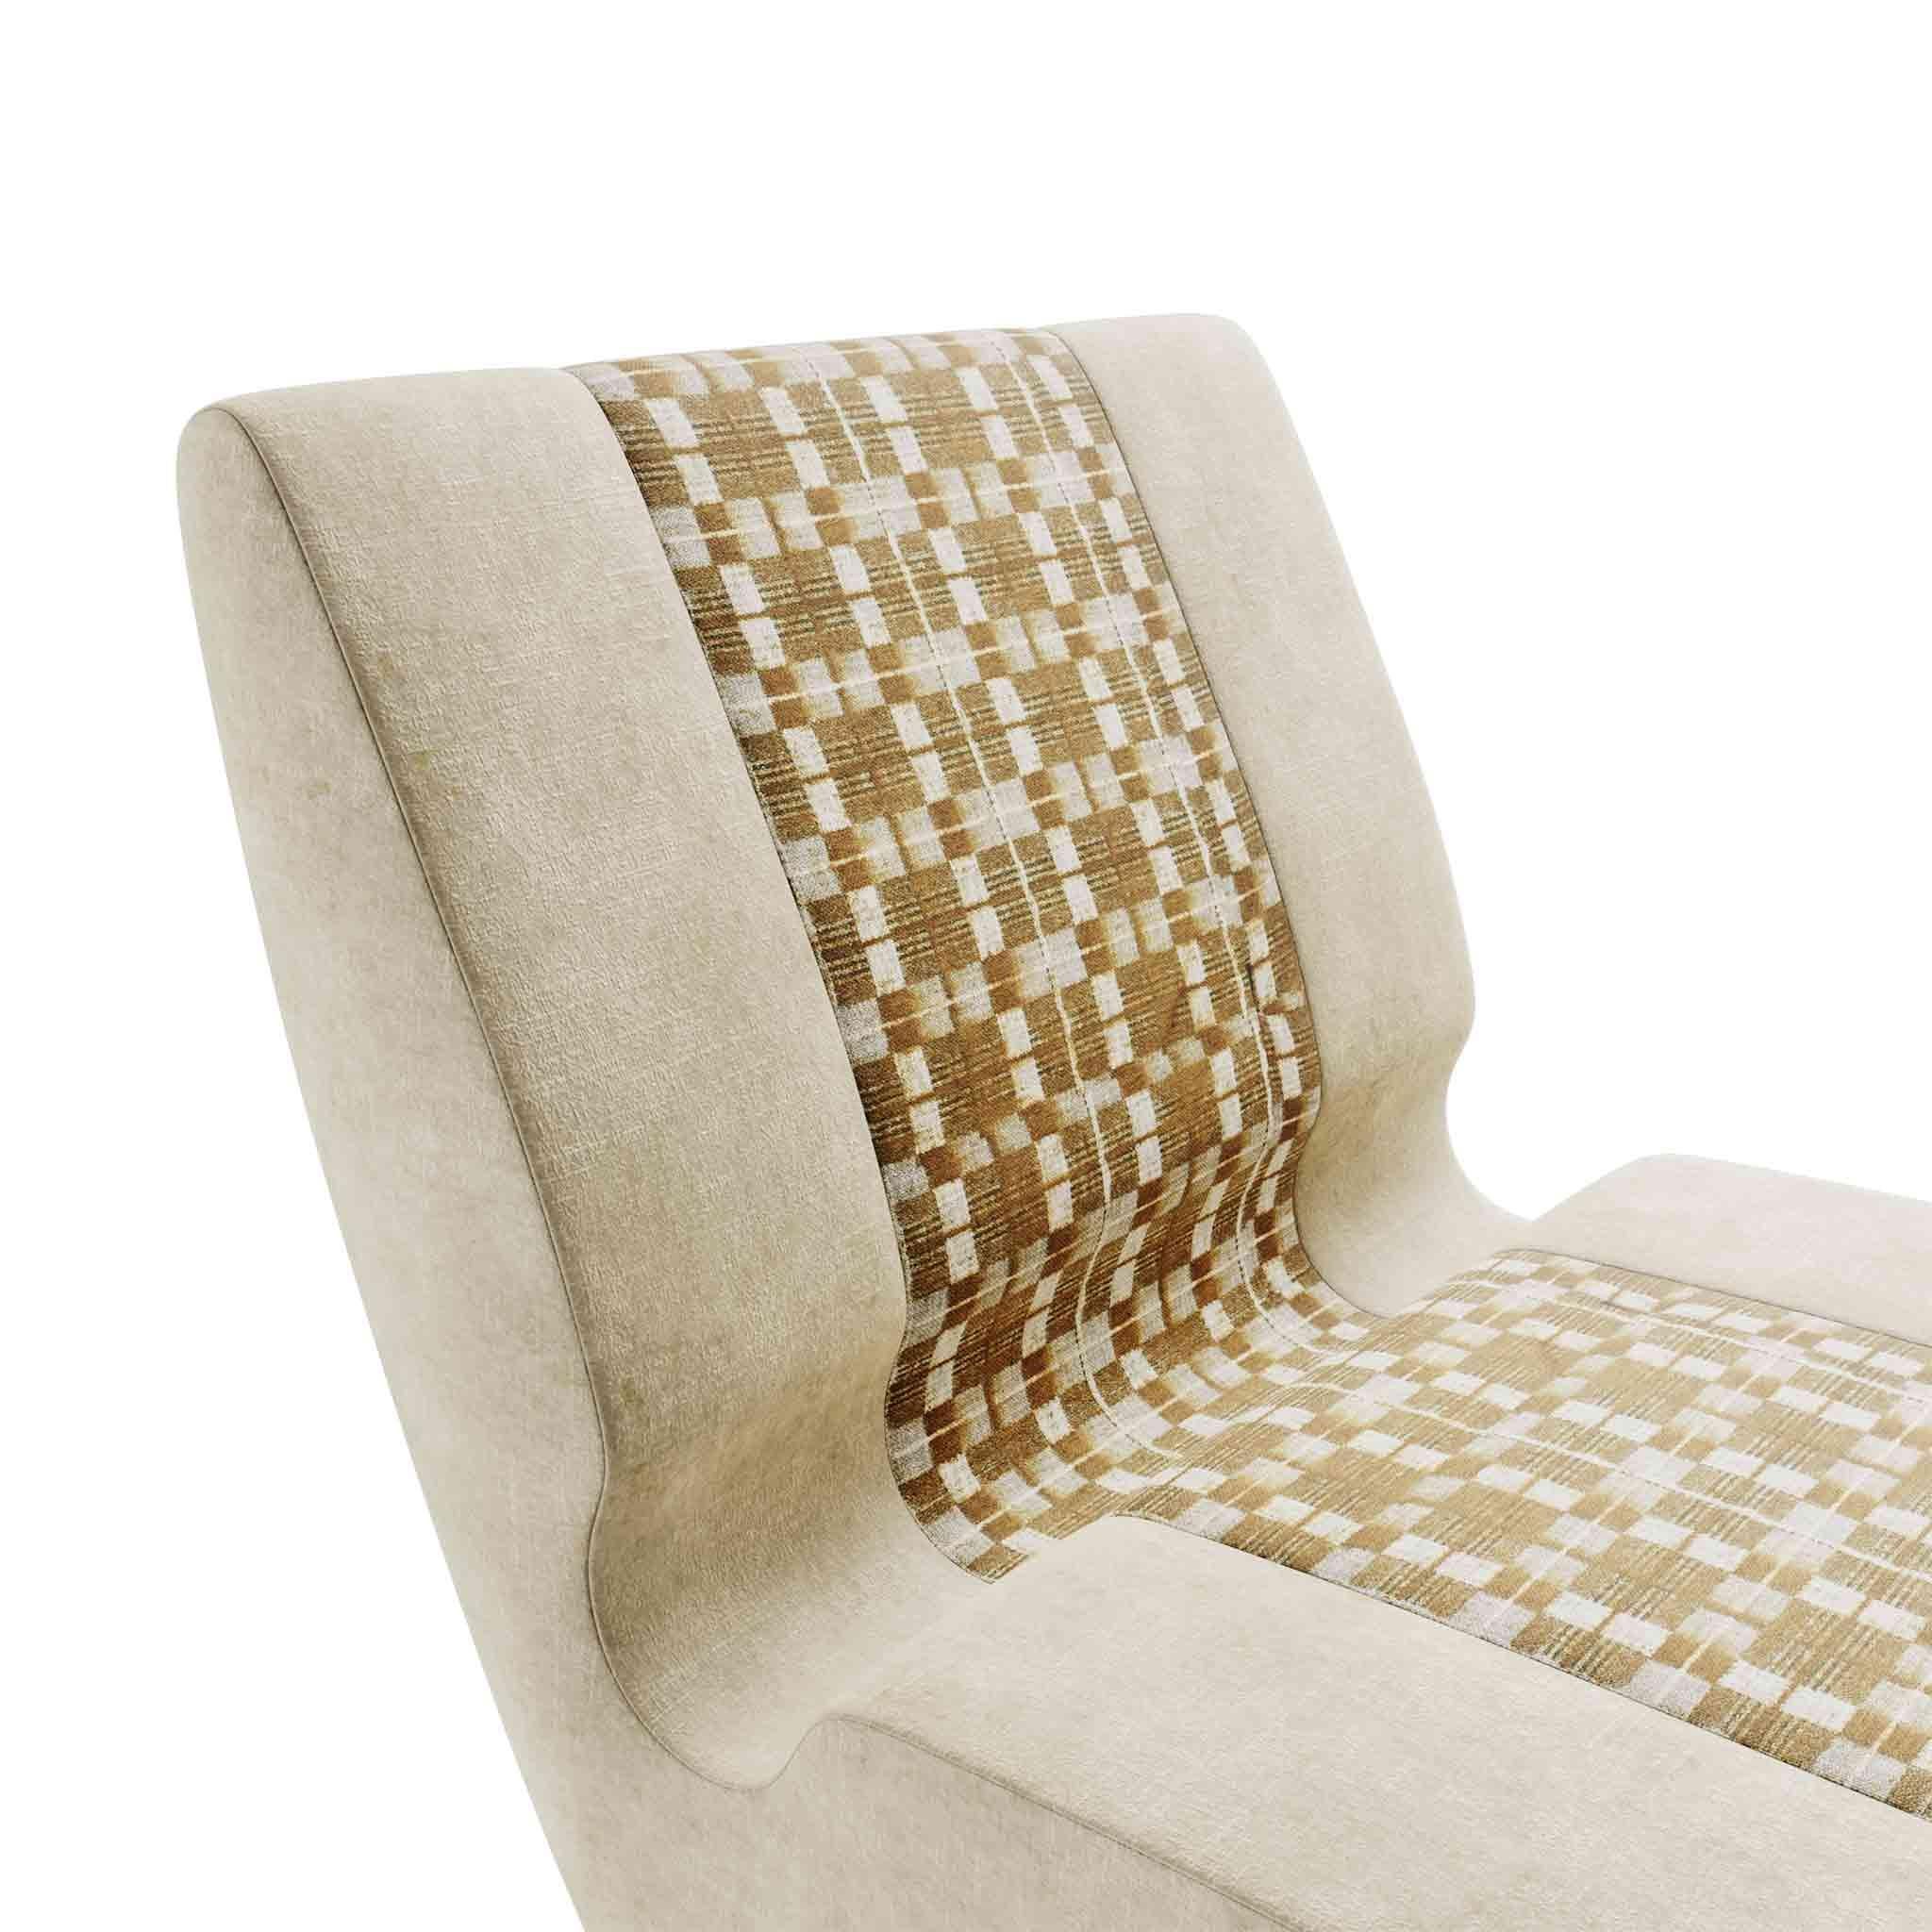 Der Gyvaté-Sessel ist ein exquisites Designerstück für hochwertige Innenausstattungsprojekte. Der Sessel ermöglicht eine individuelle Zusammenstellung; er kann mit einem anderen zu einem modularen Sofa kombiniert werden. Ein AM Contemporary Sessel,